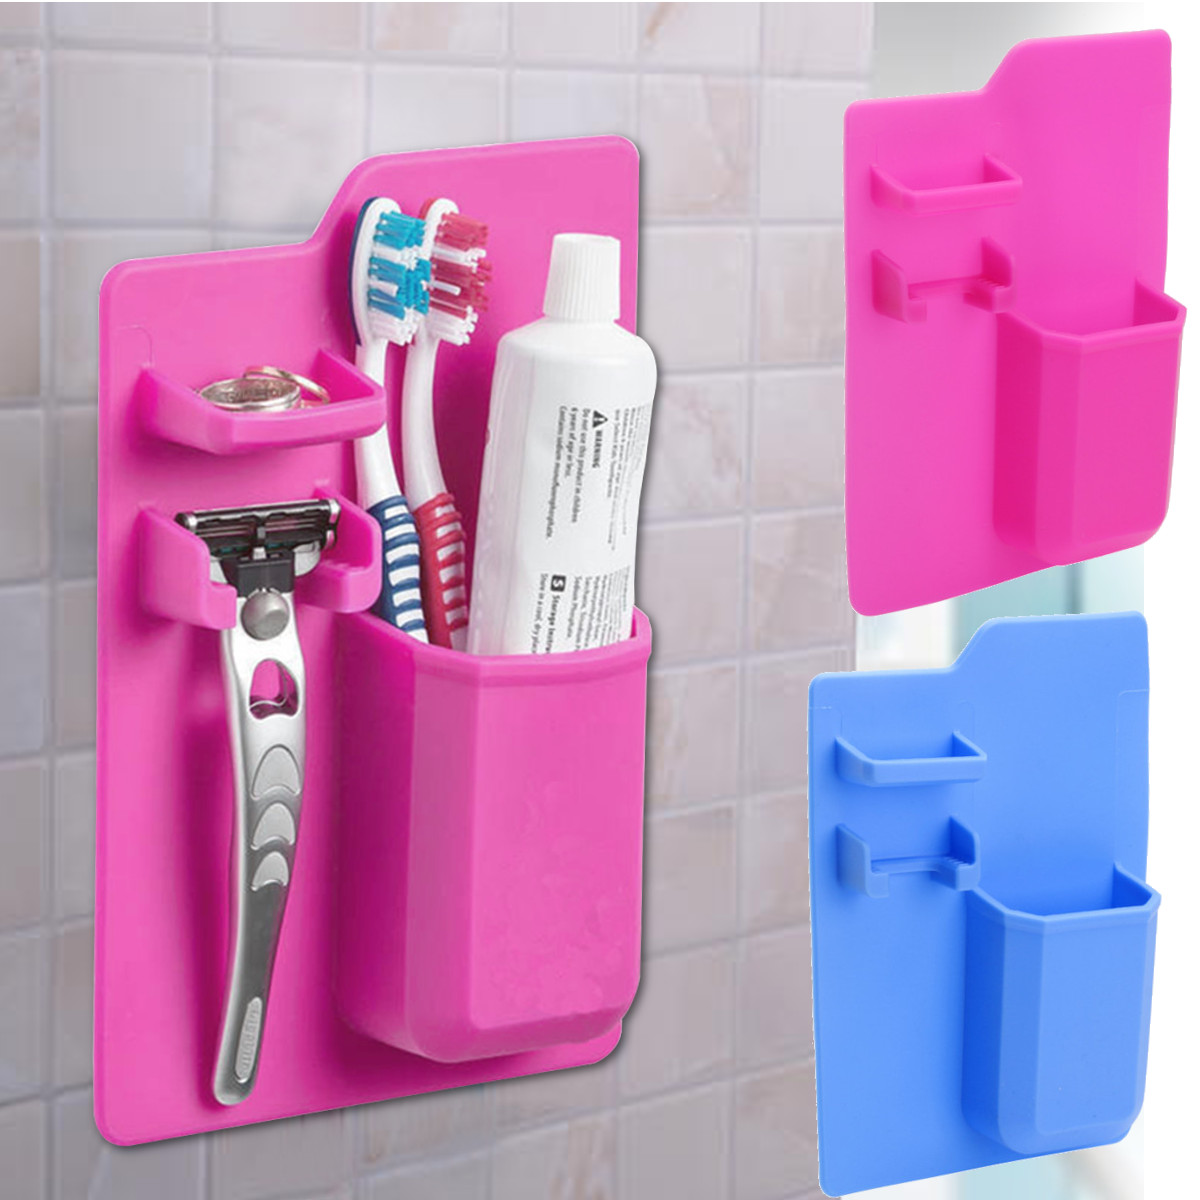 Bathroom-Kitchen-Silicone-Toothbrush-Holder-Toothpaste-Bracket-Mirror-Organizer-Storage-Space-Rack-1322584-3